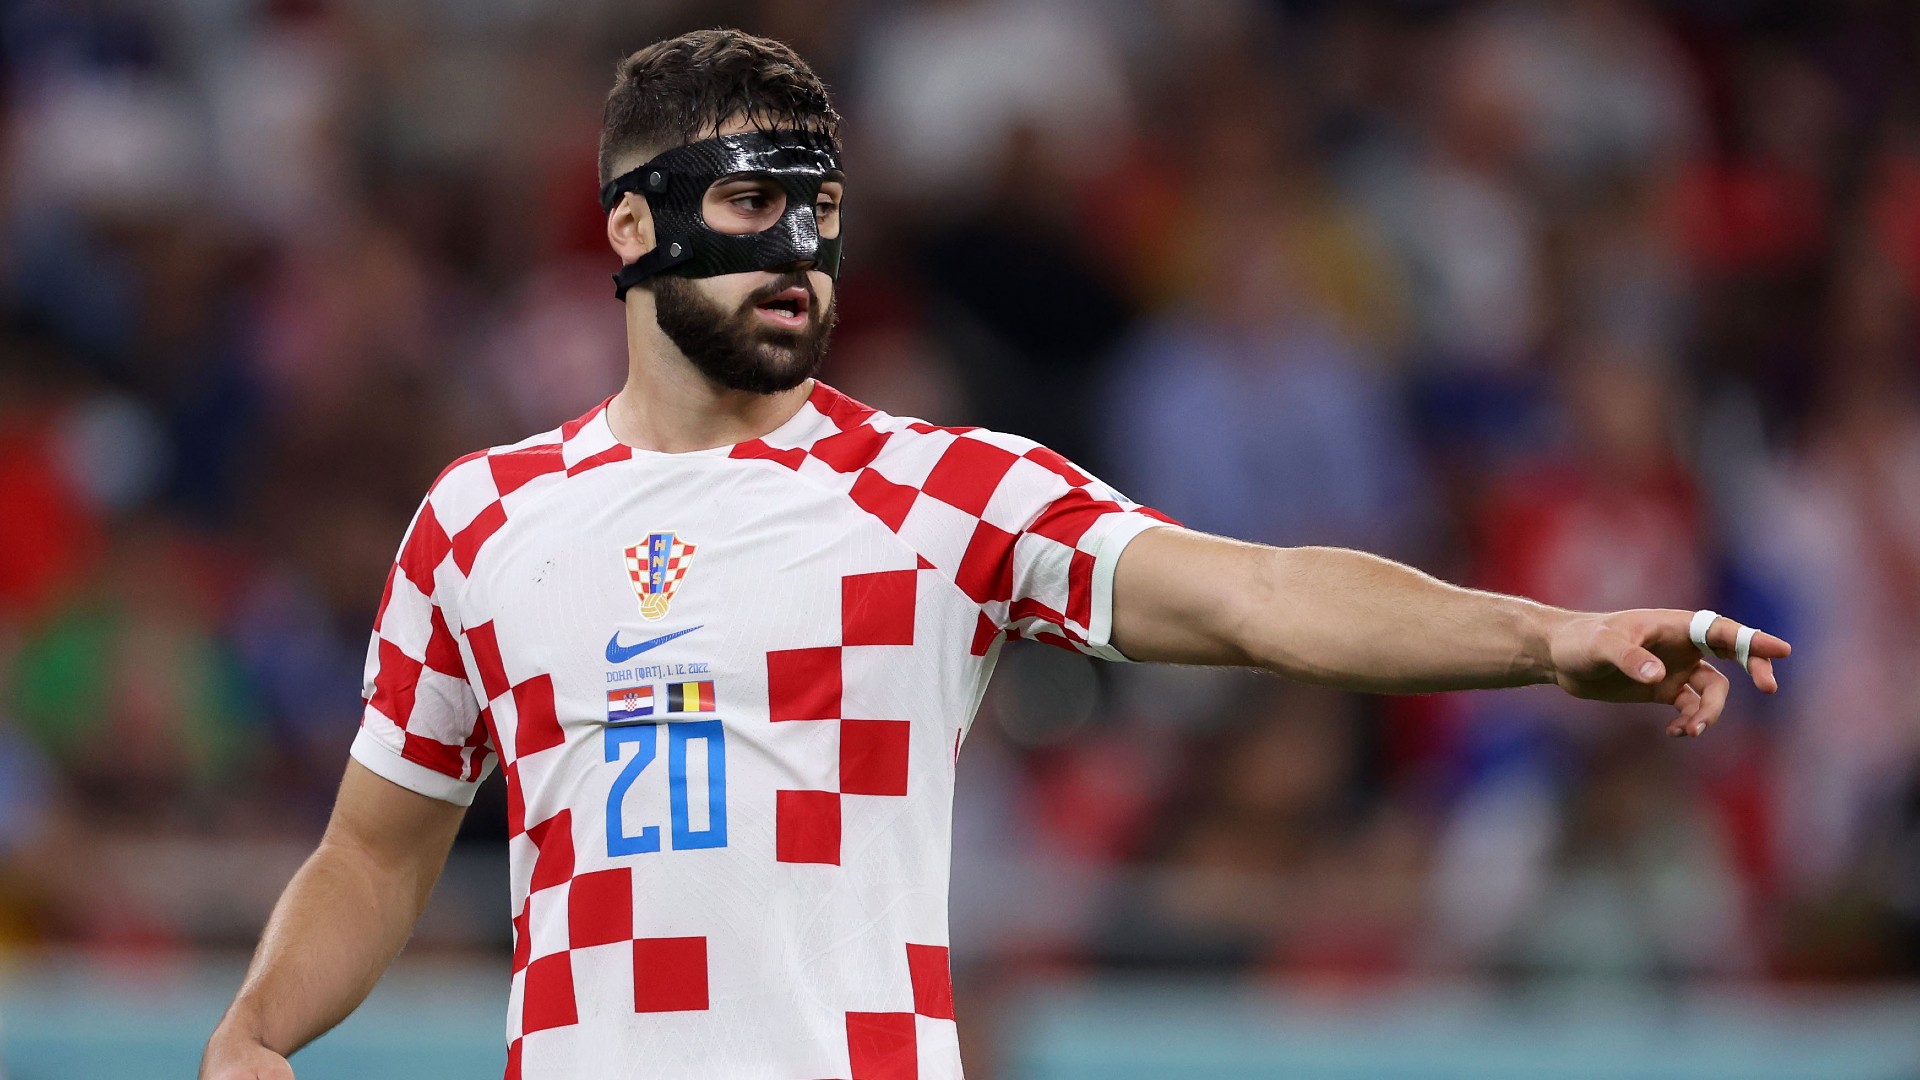 Cầu thủ Croatia nhận được nhiều đánh giá cao về chuyên môn